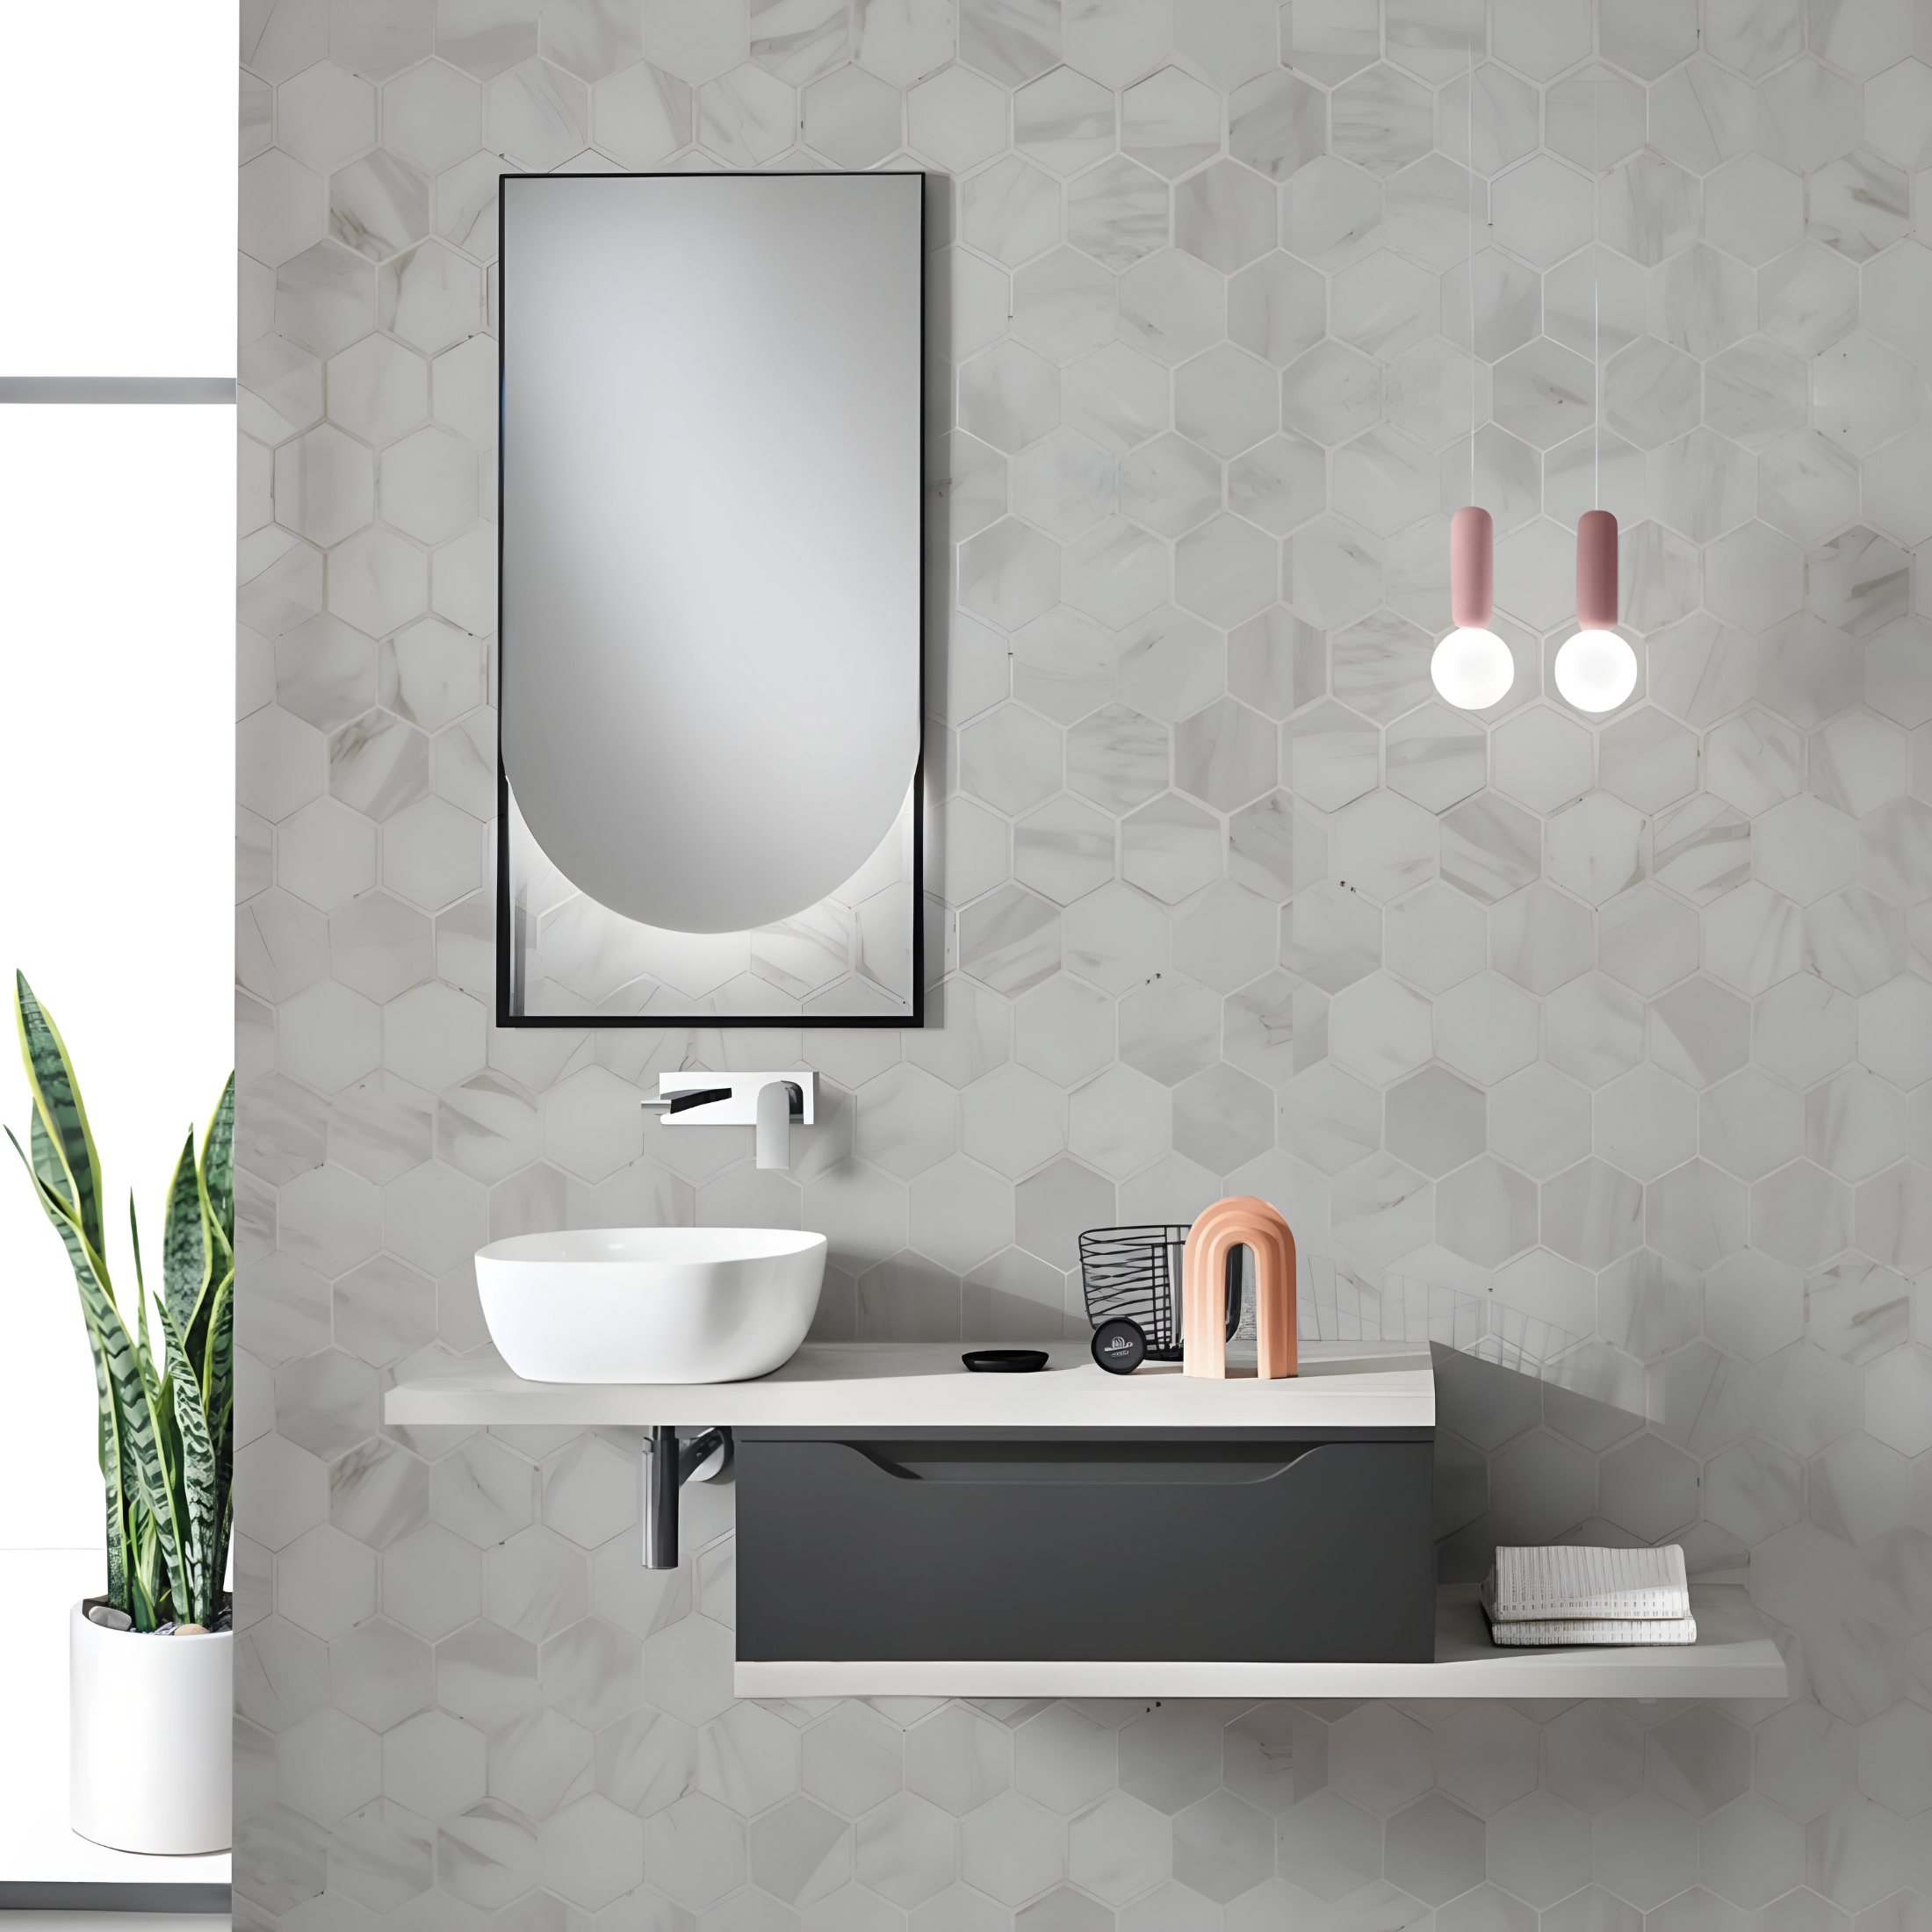 Mobile moderno da bagno sospeso "Mixi f" 1 cassetto specchio led lavabo da appoggio